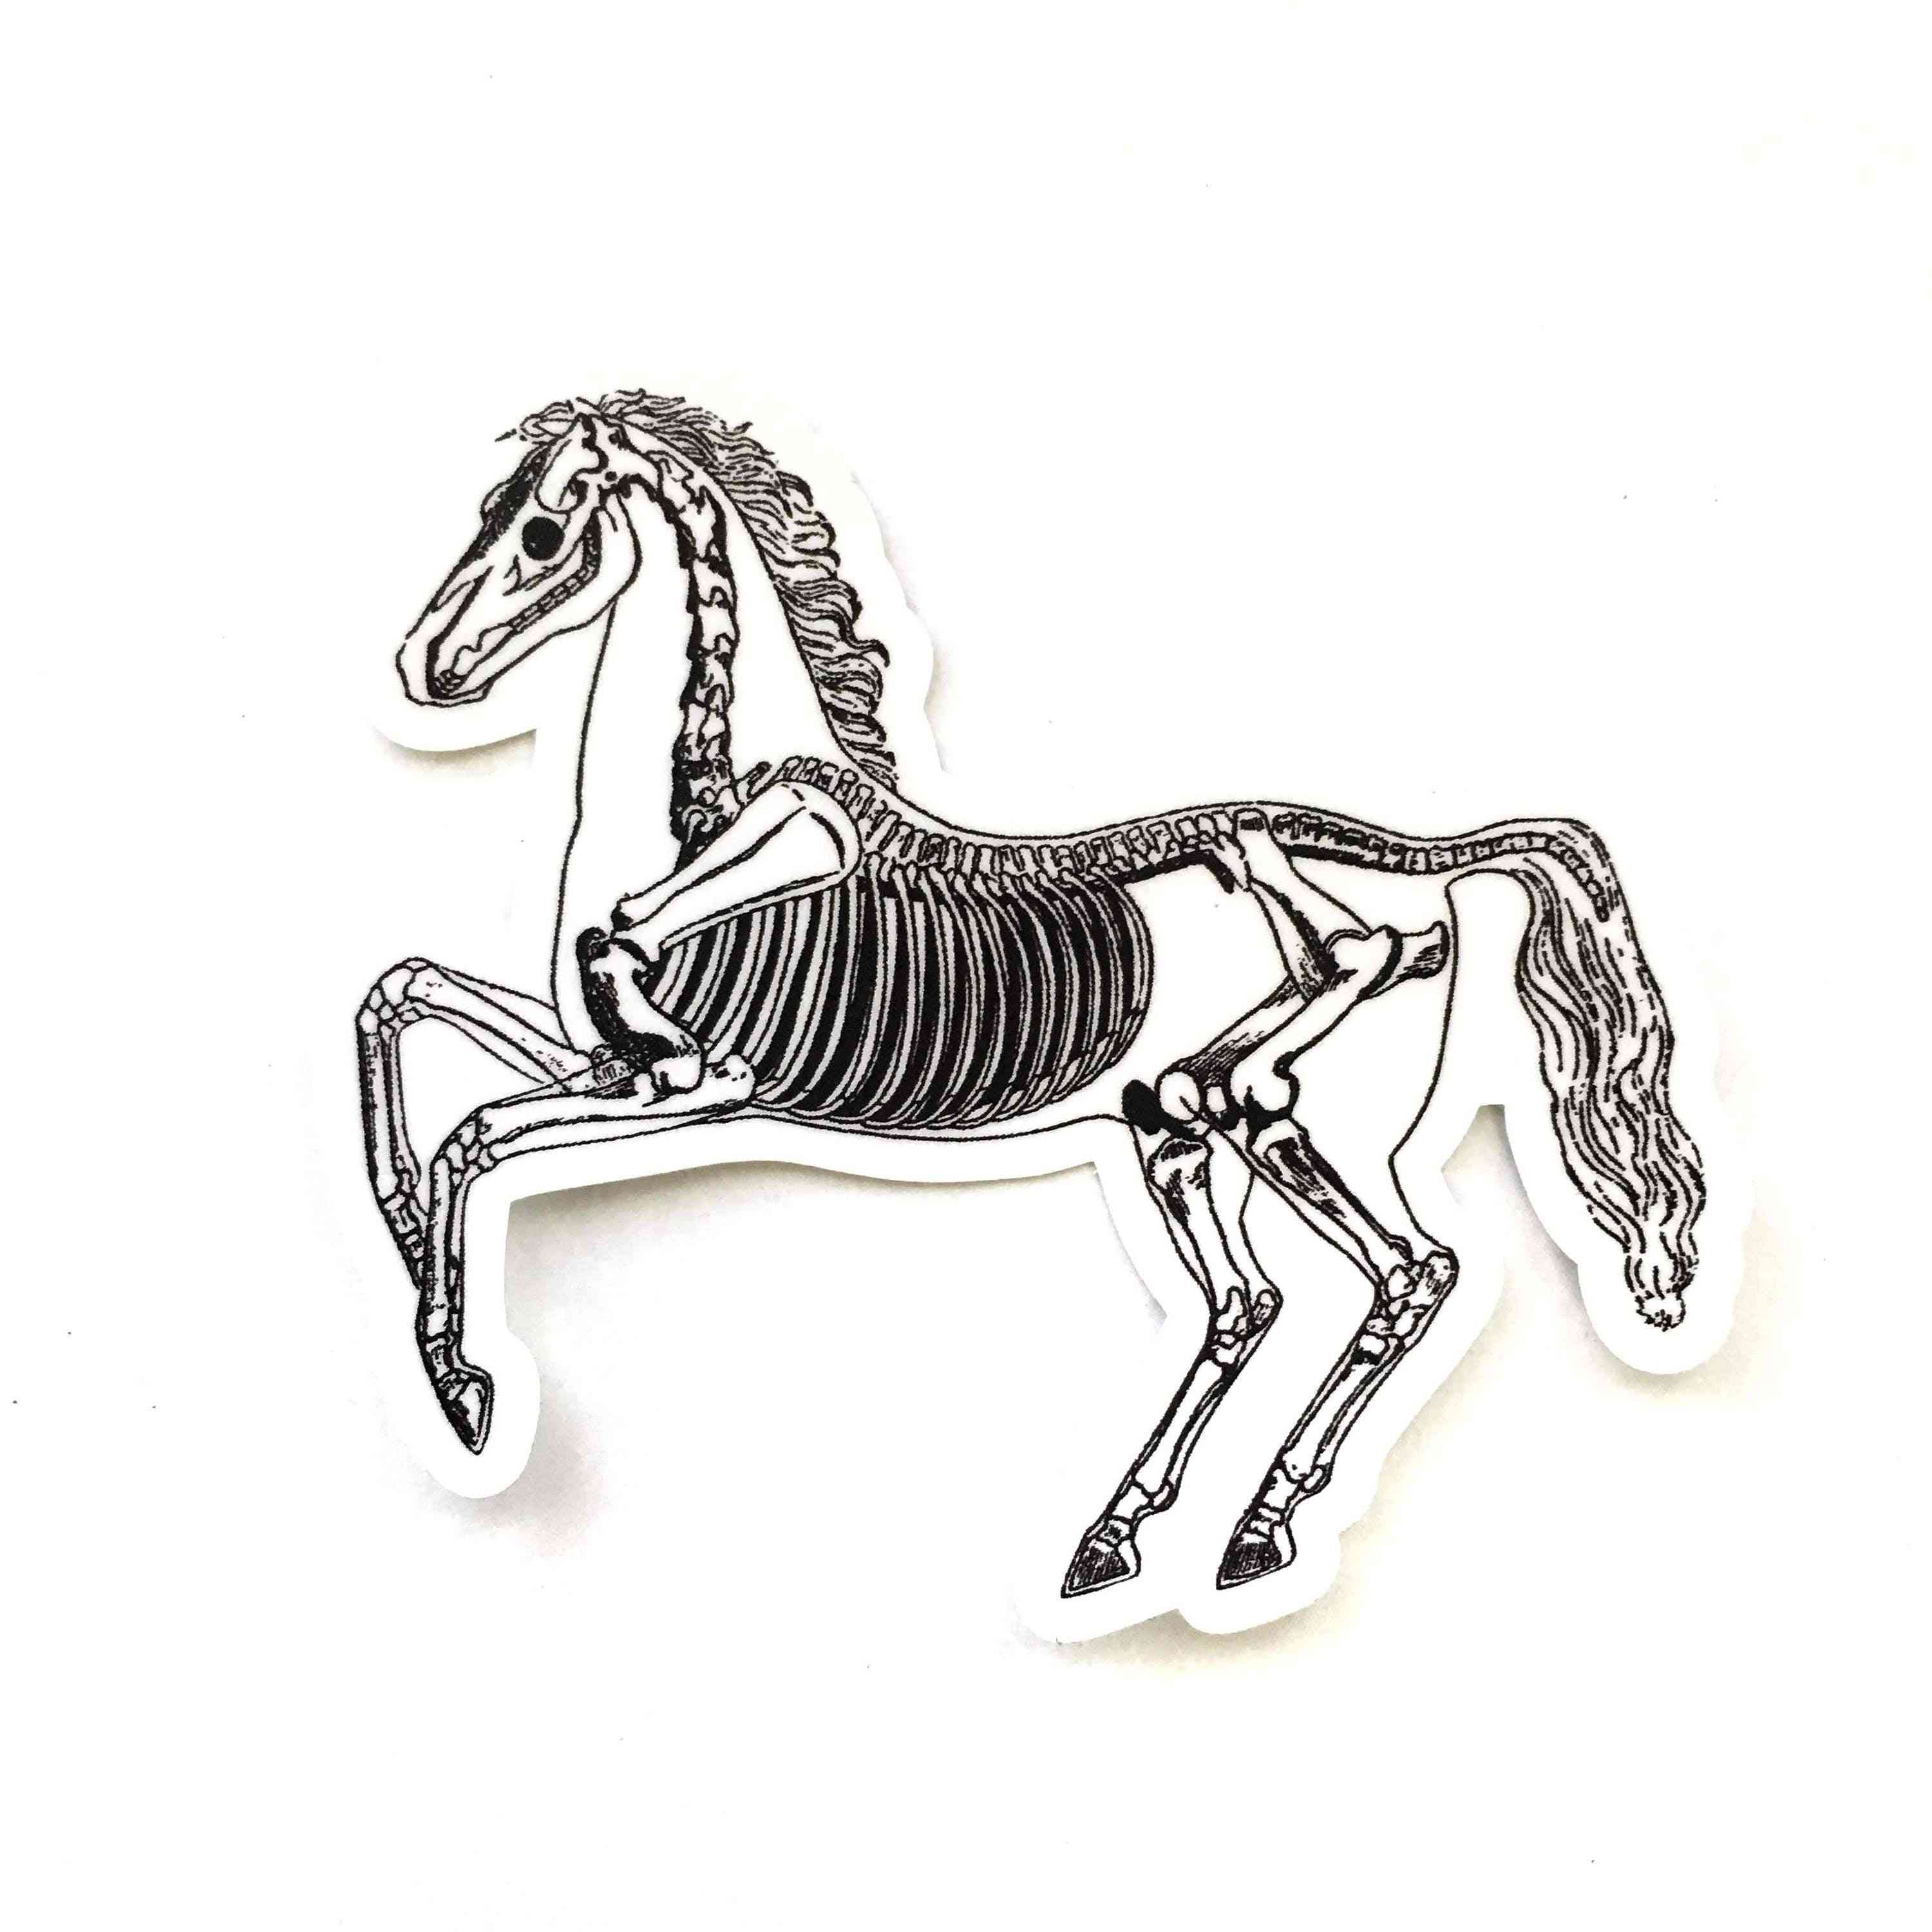 Vinilo decorativo caballo esqueleto vintage